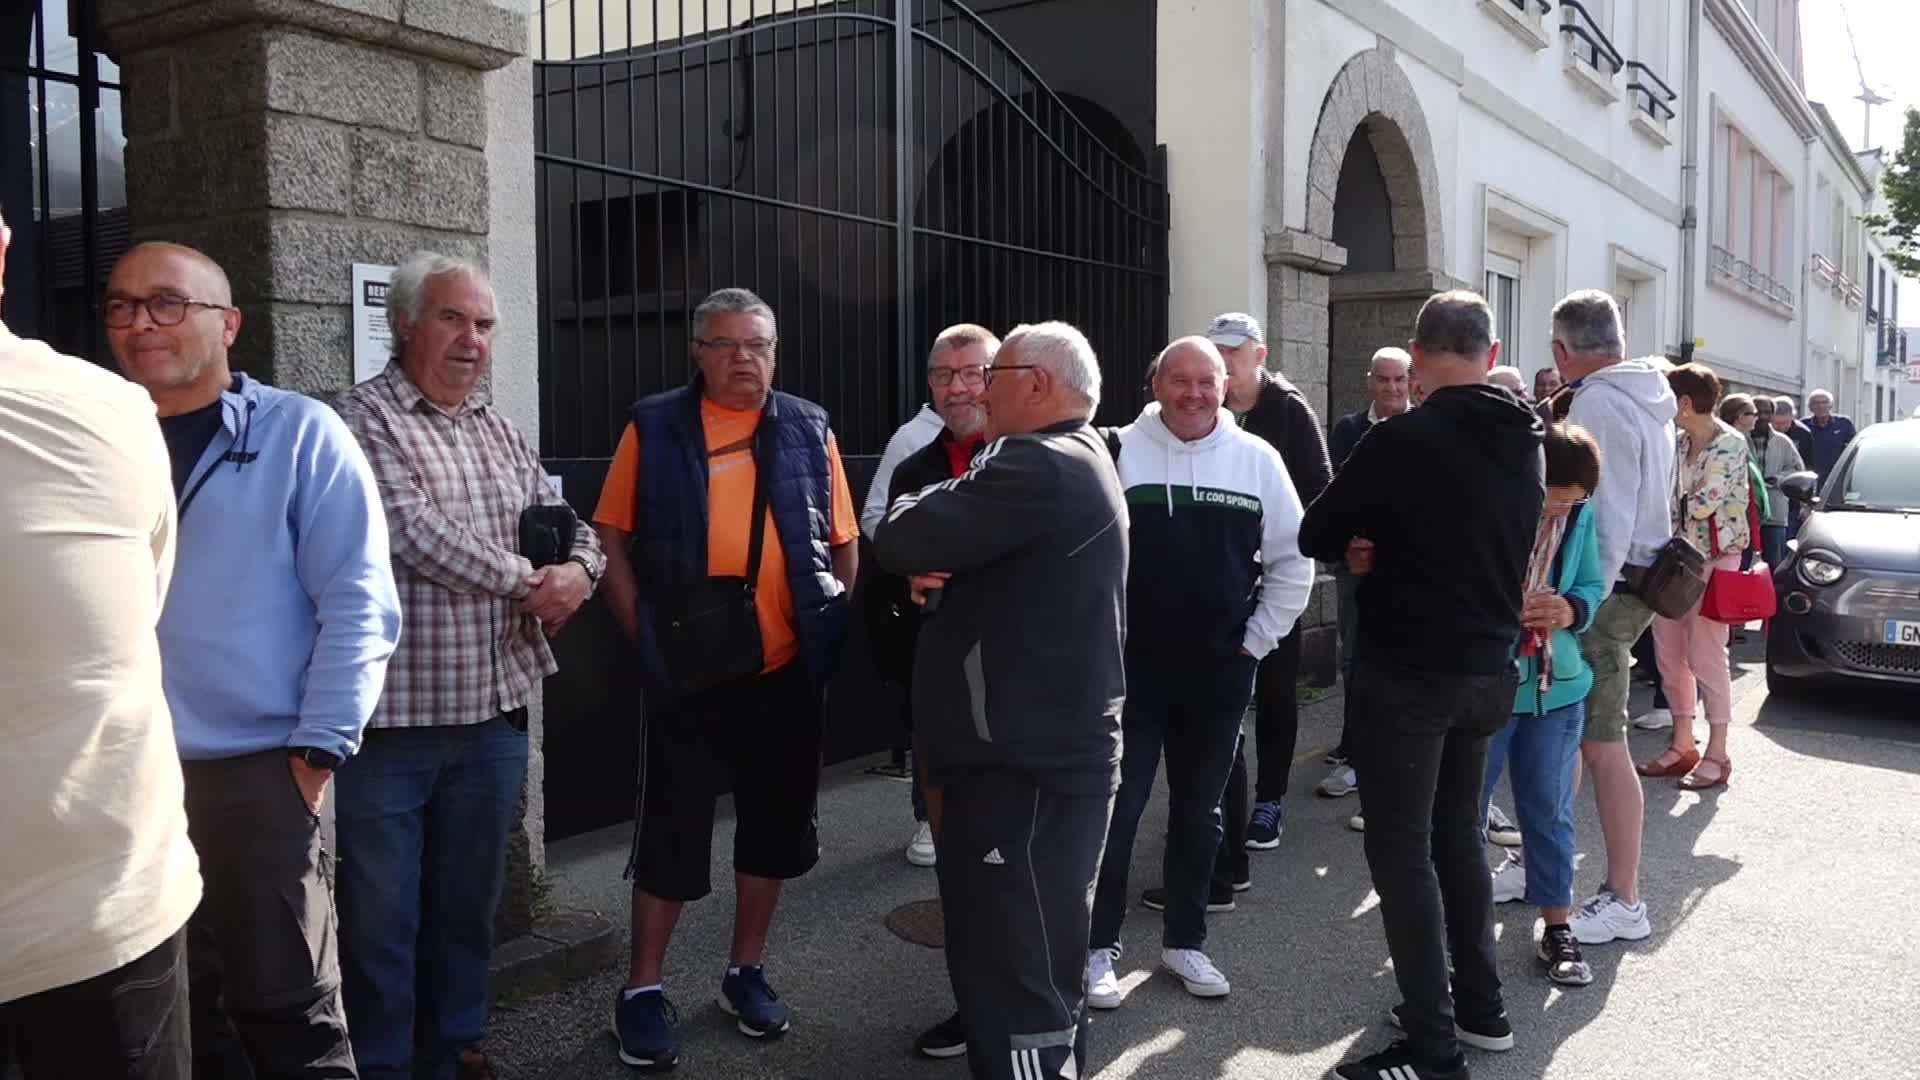 Stade Brestois : file d'attente devant le club pour renouveler sa carte d'abonnement [Vidéo]